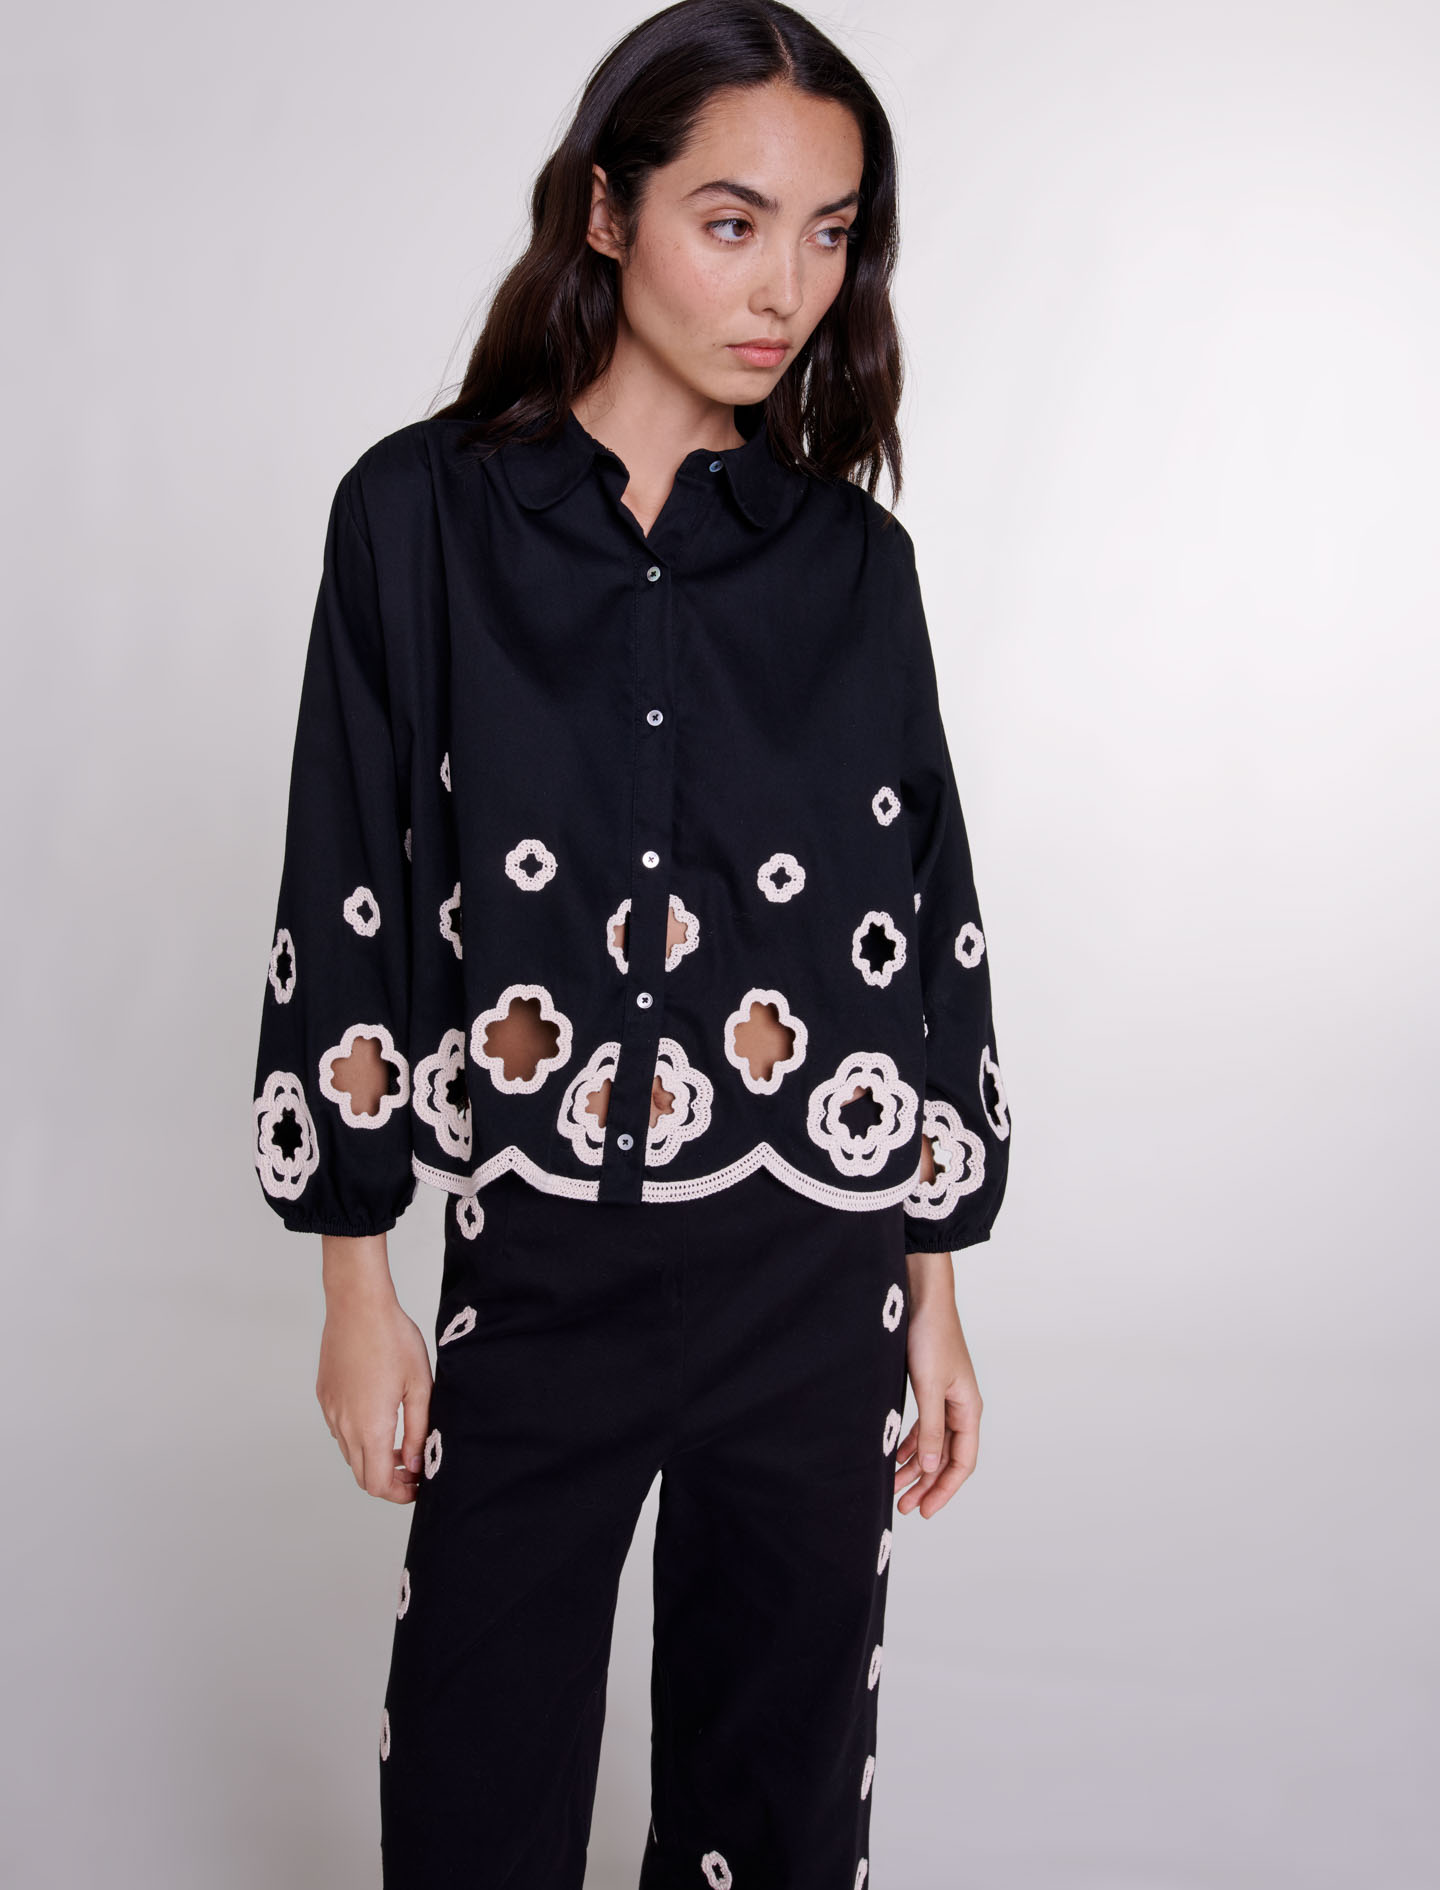 Crochet clovers shirt - Black